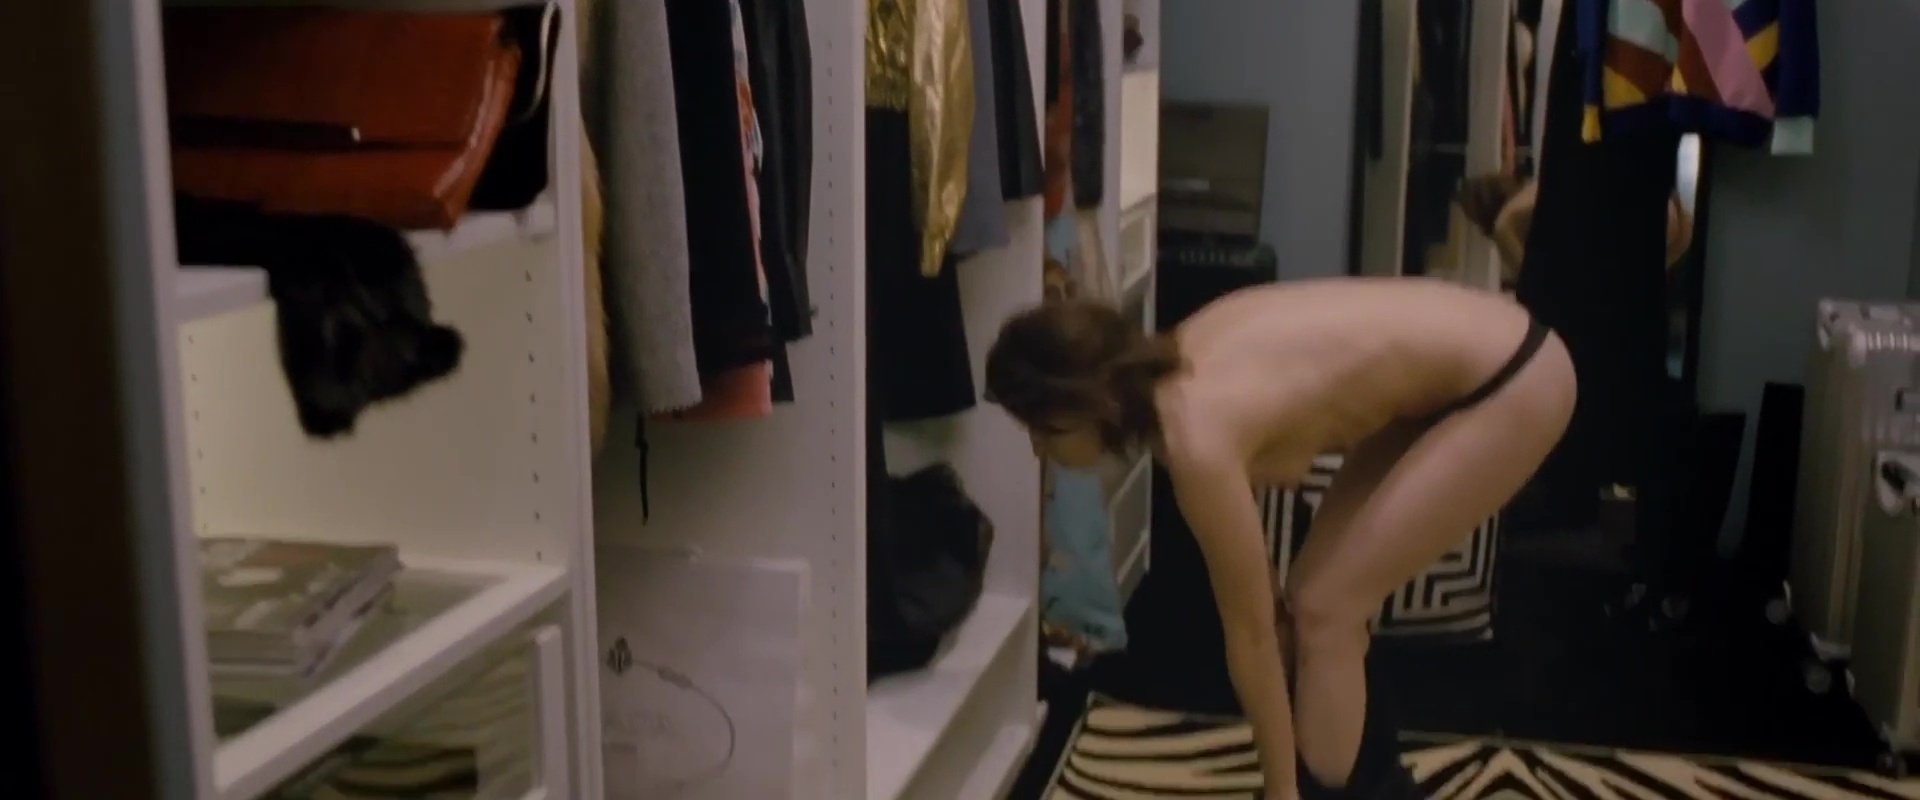 Kristen Stewart Topless Personal Shopper webyoung porn